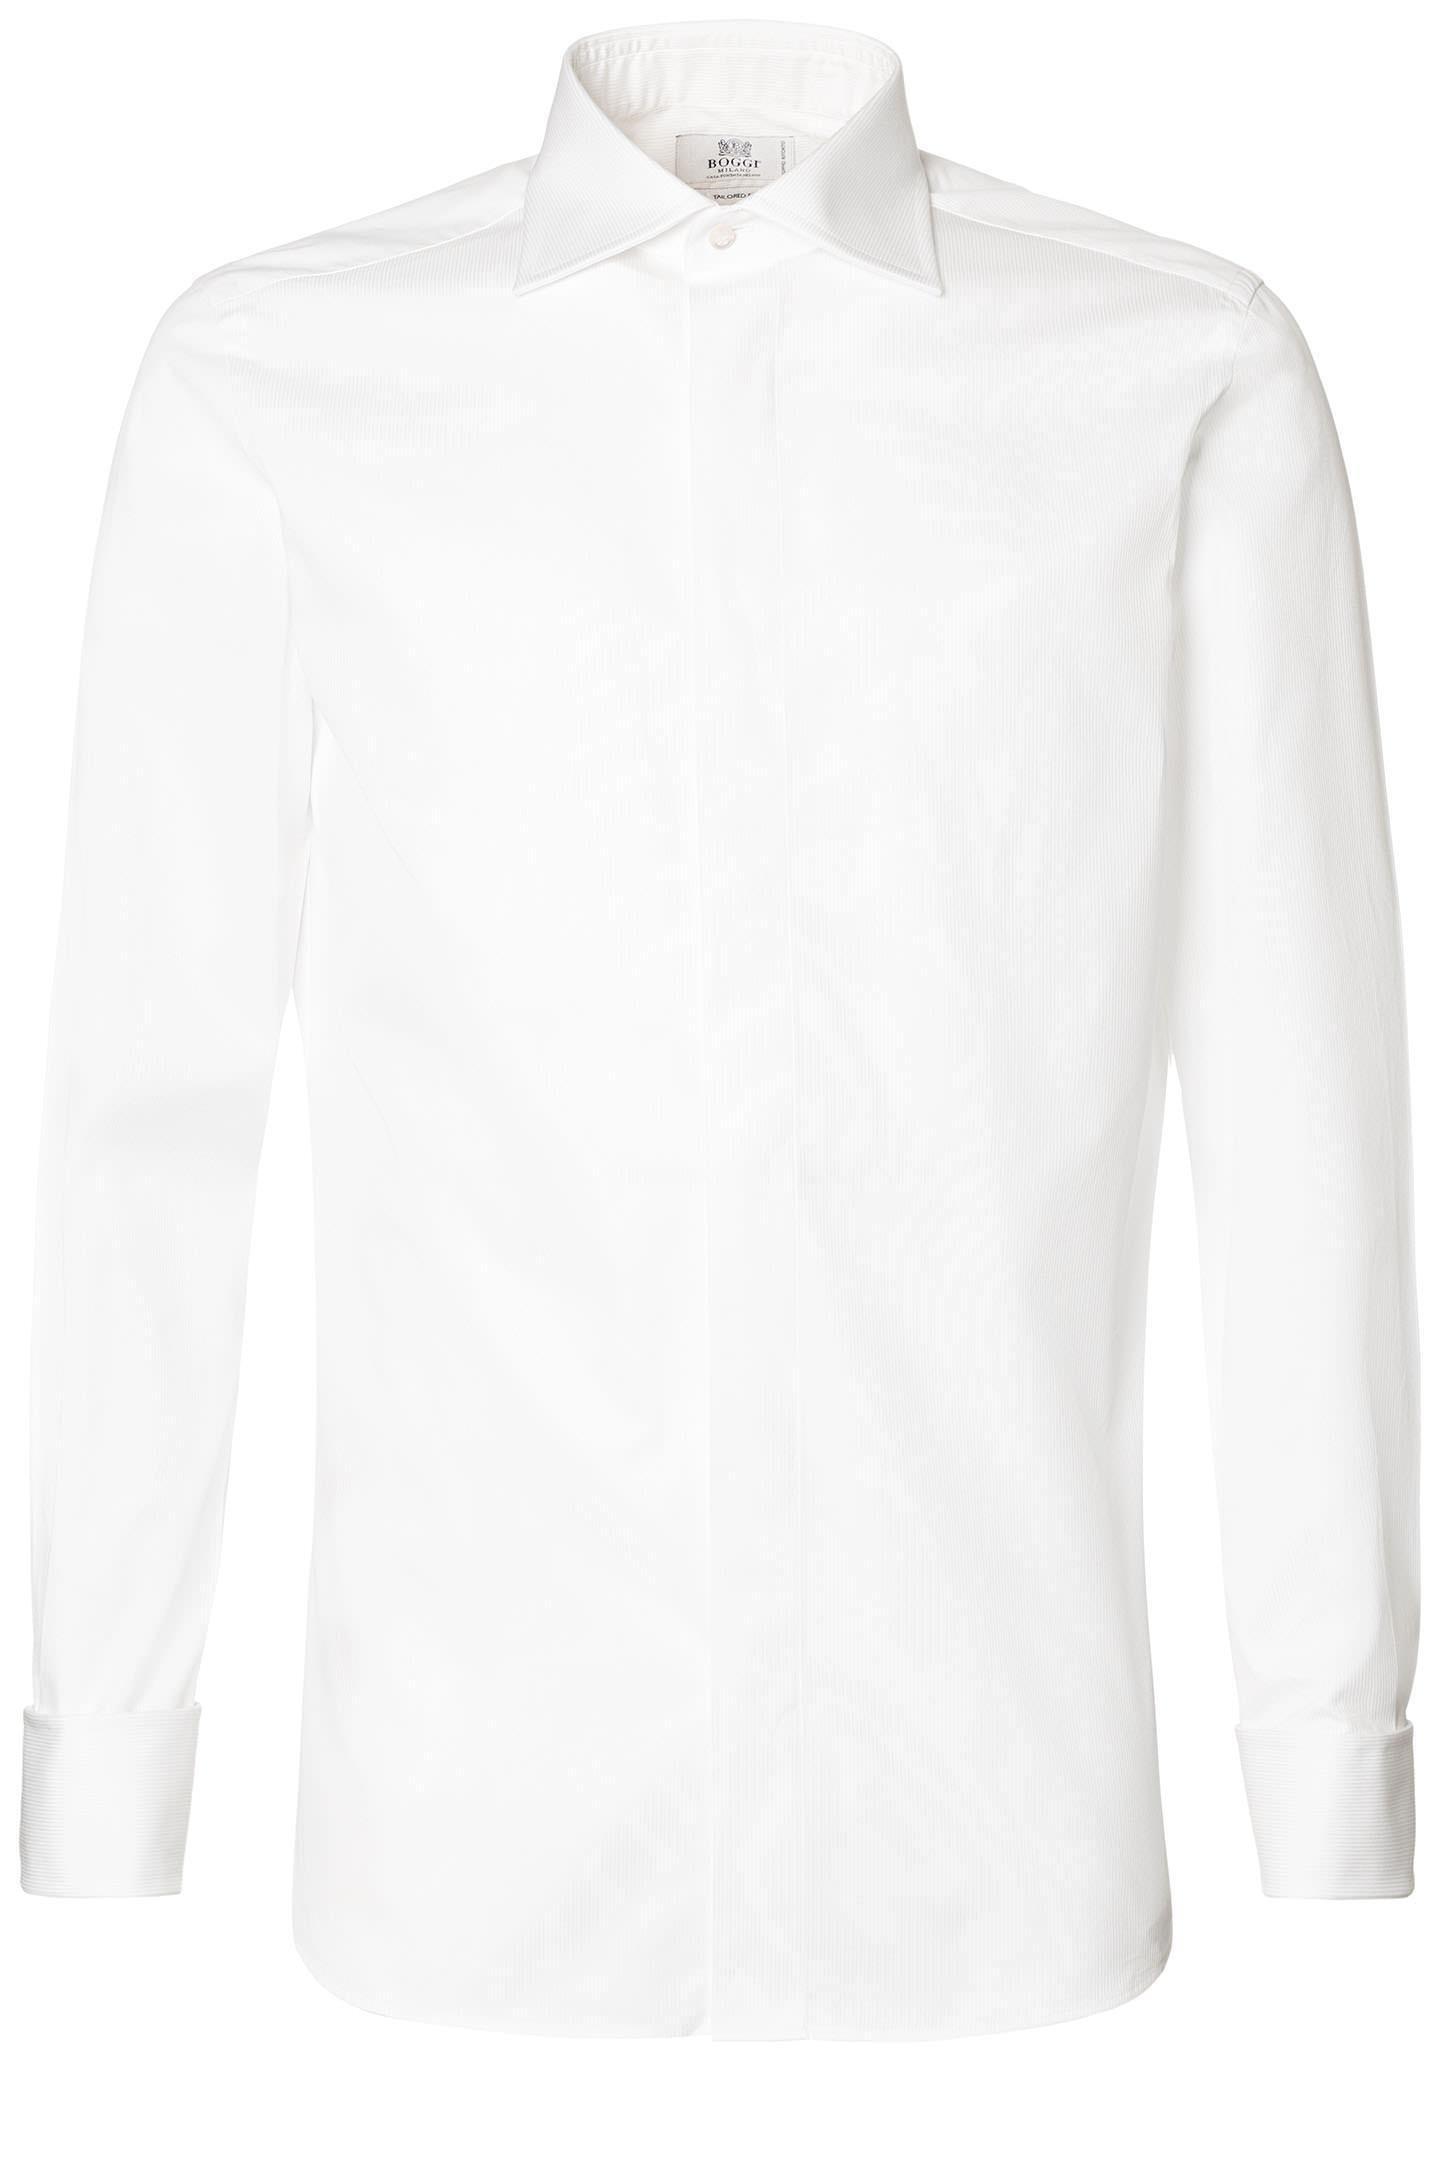 Boggi Milano - قميص تكسيدو قطن سليم أبيض